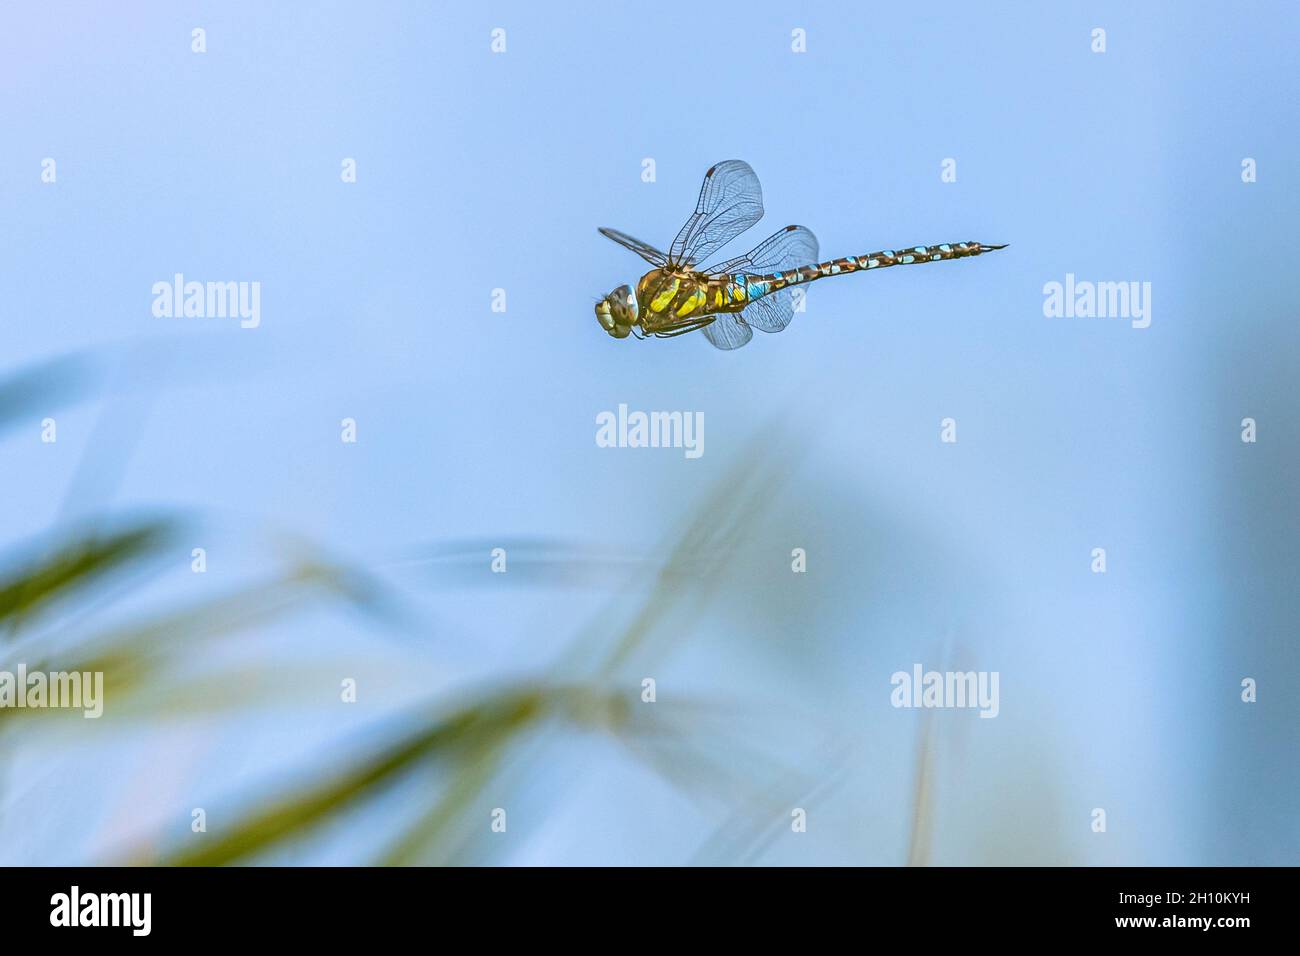 grande libellule colorée volant dans le ciel bleu - image haute vitesse Banque D'Images